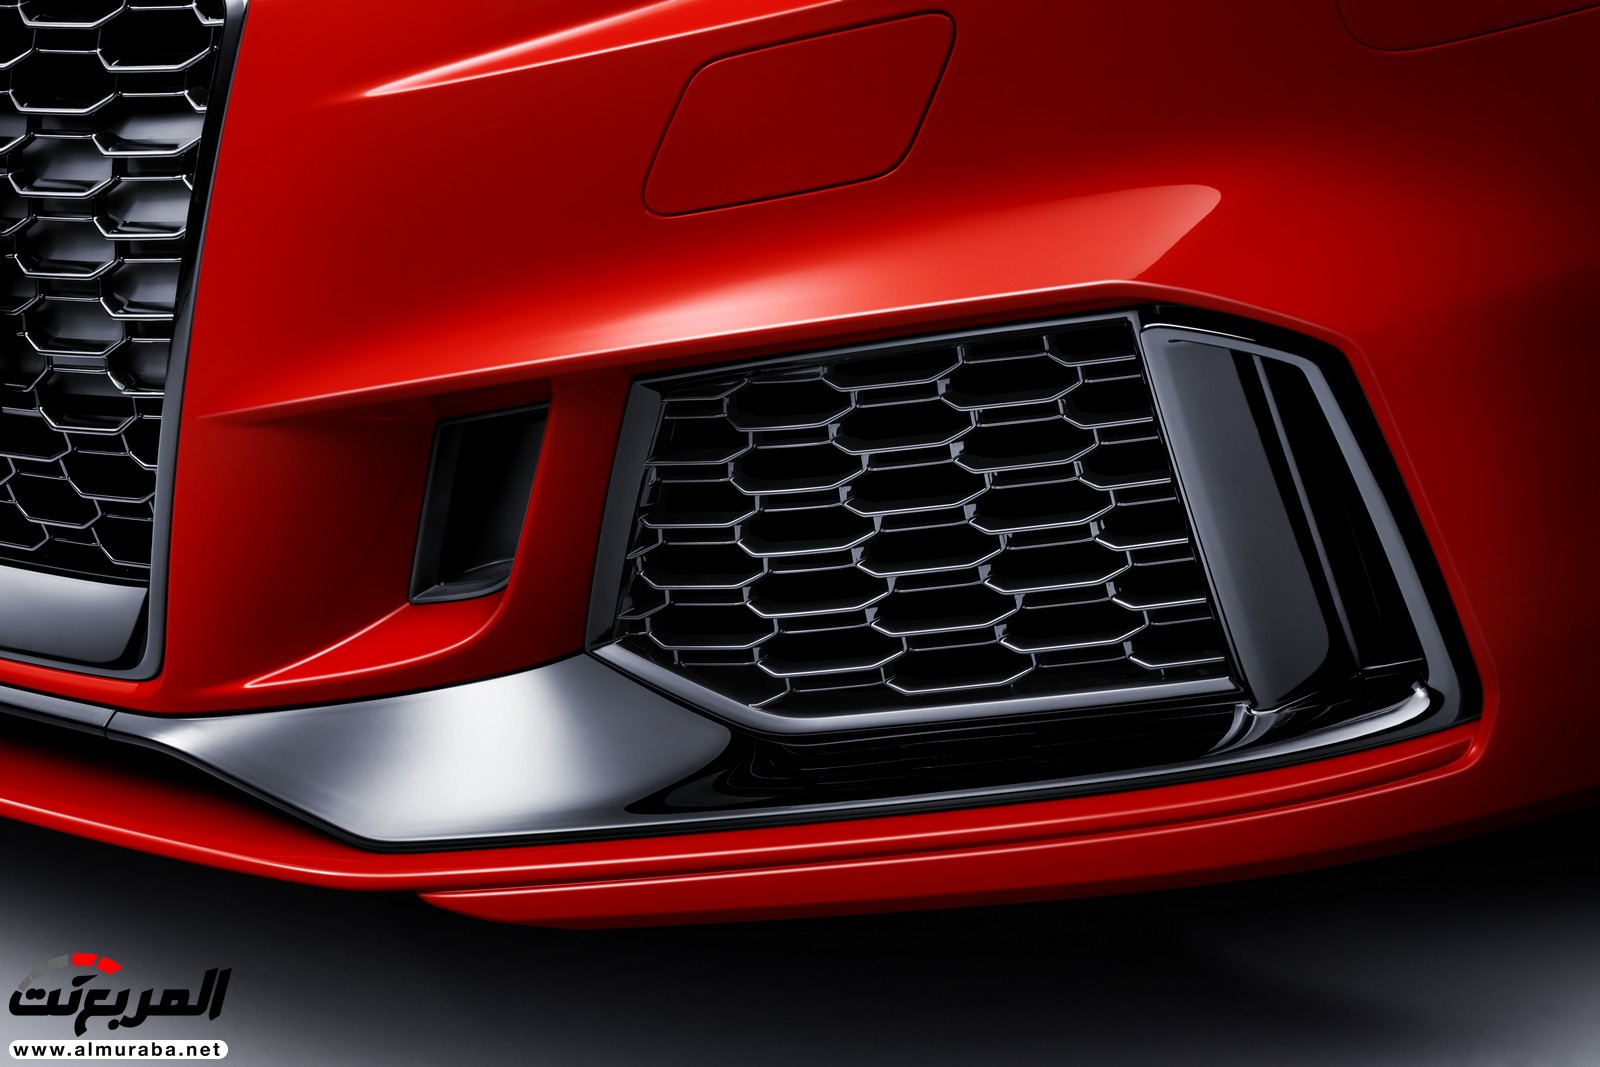 "أودي" تكشف عن RS3 الجديدة كليا 2018 بقوة 395 حصان Audi 49